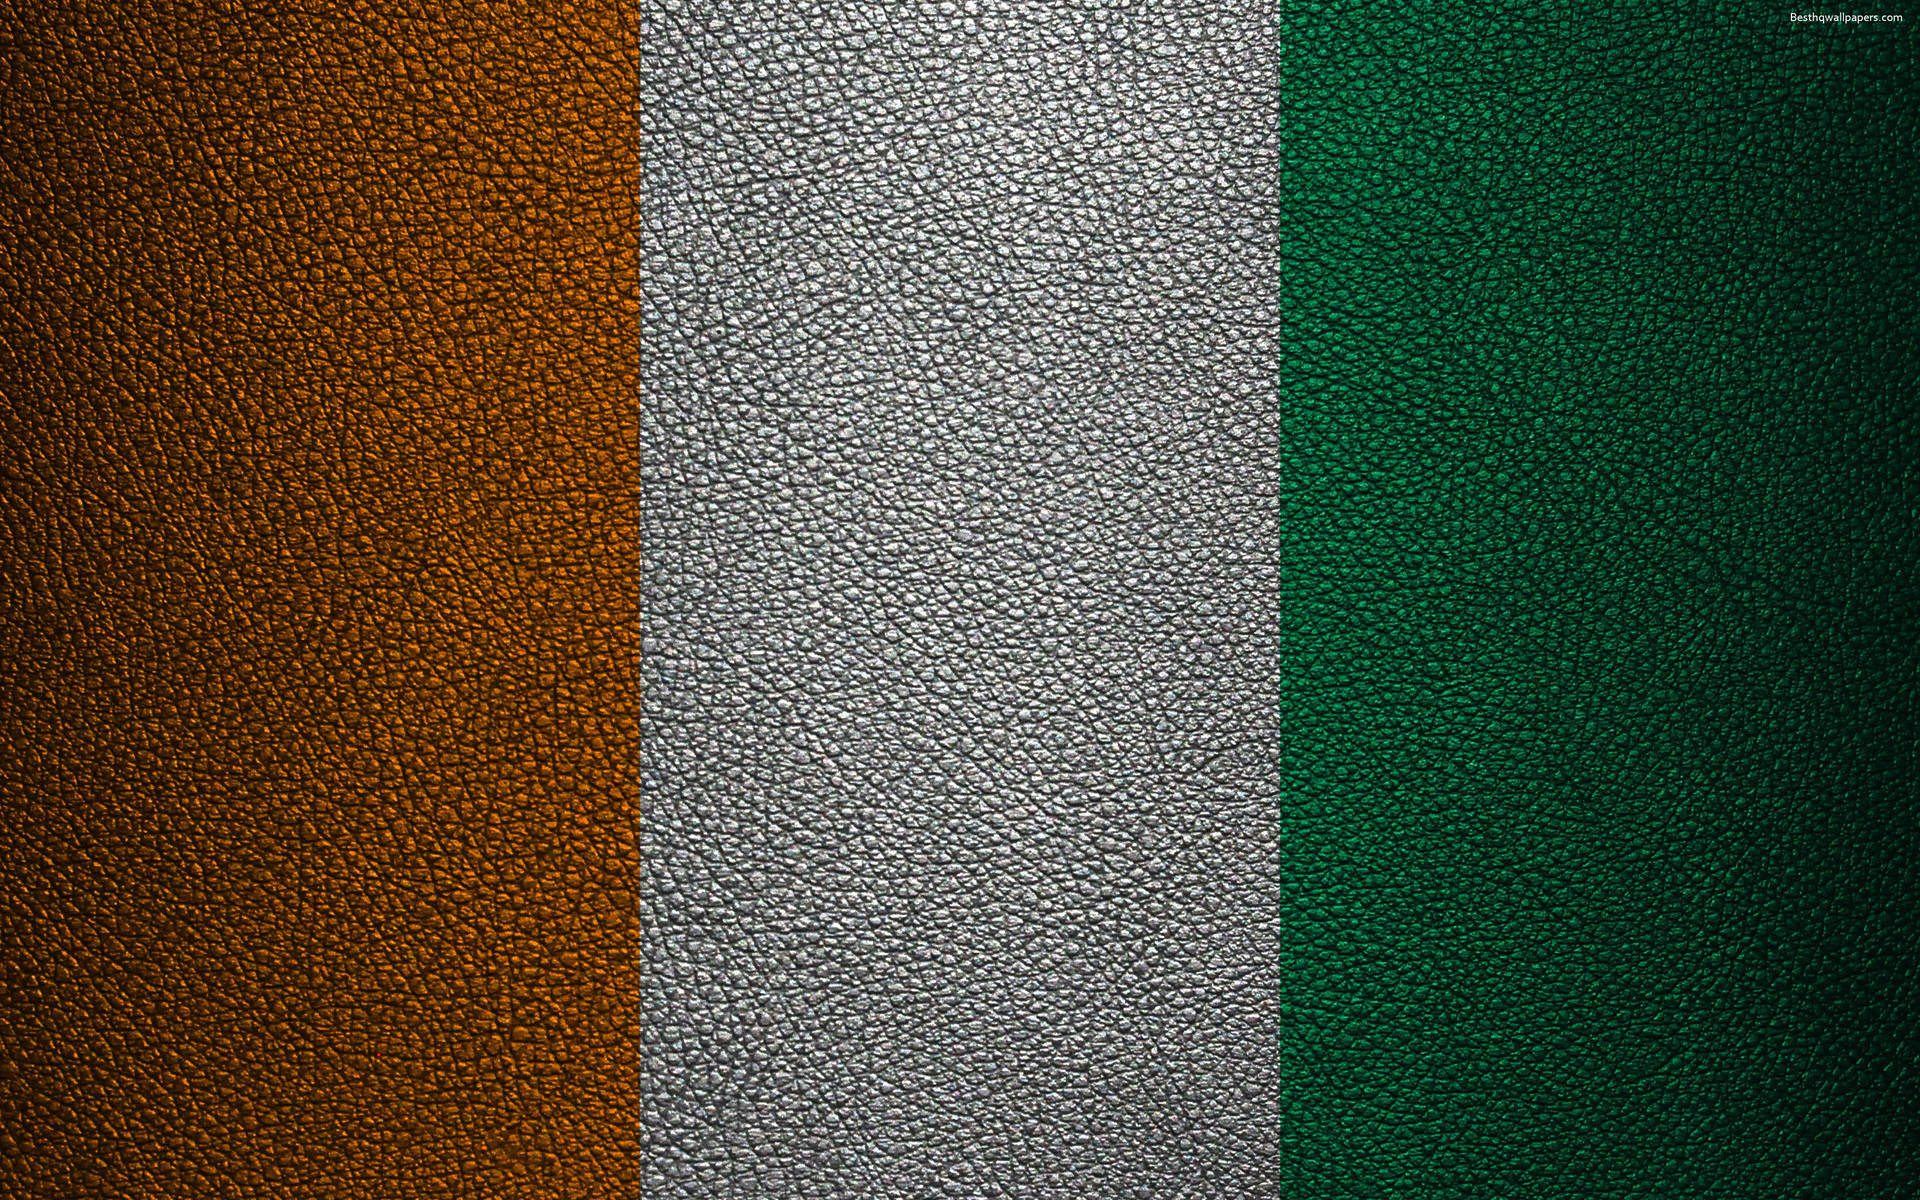 Leather-like Ivory Coast Flag Background